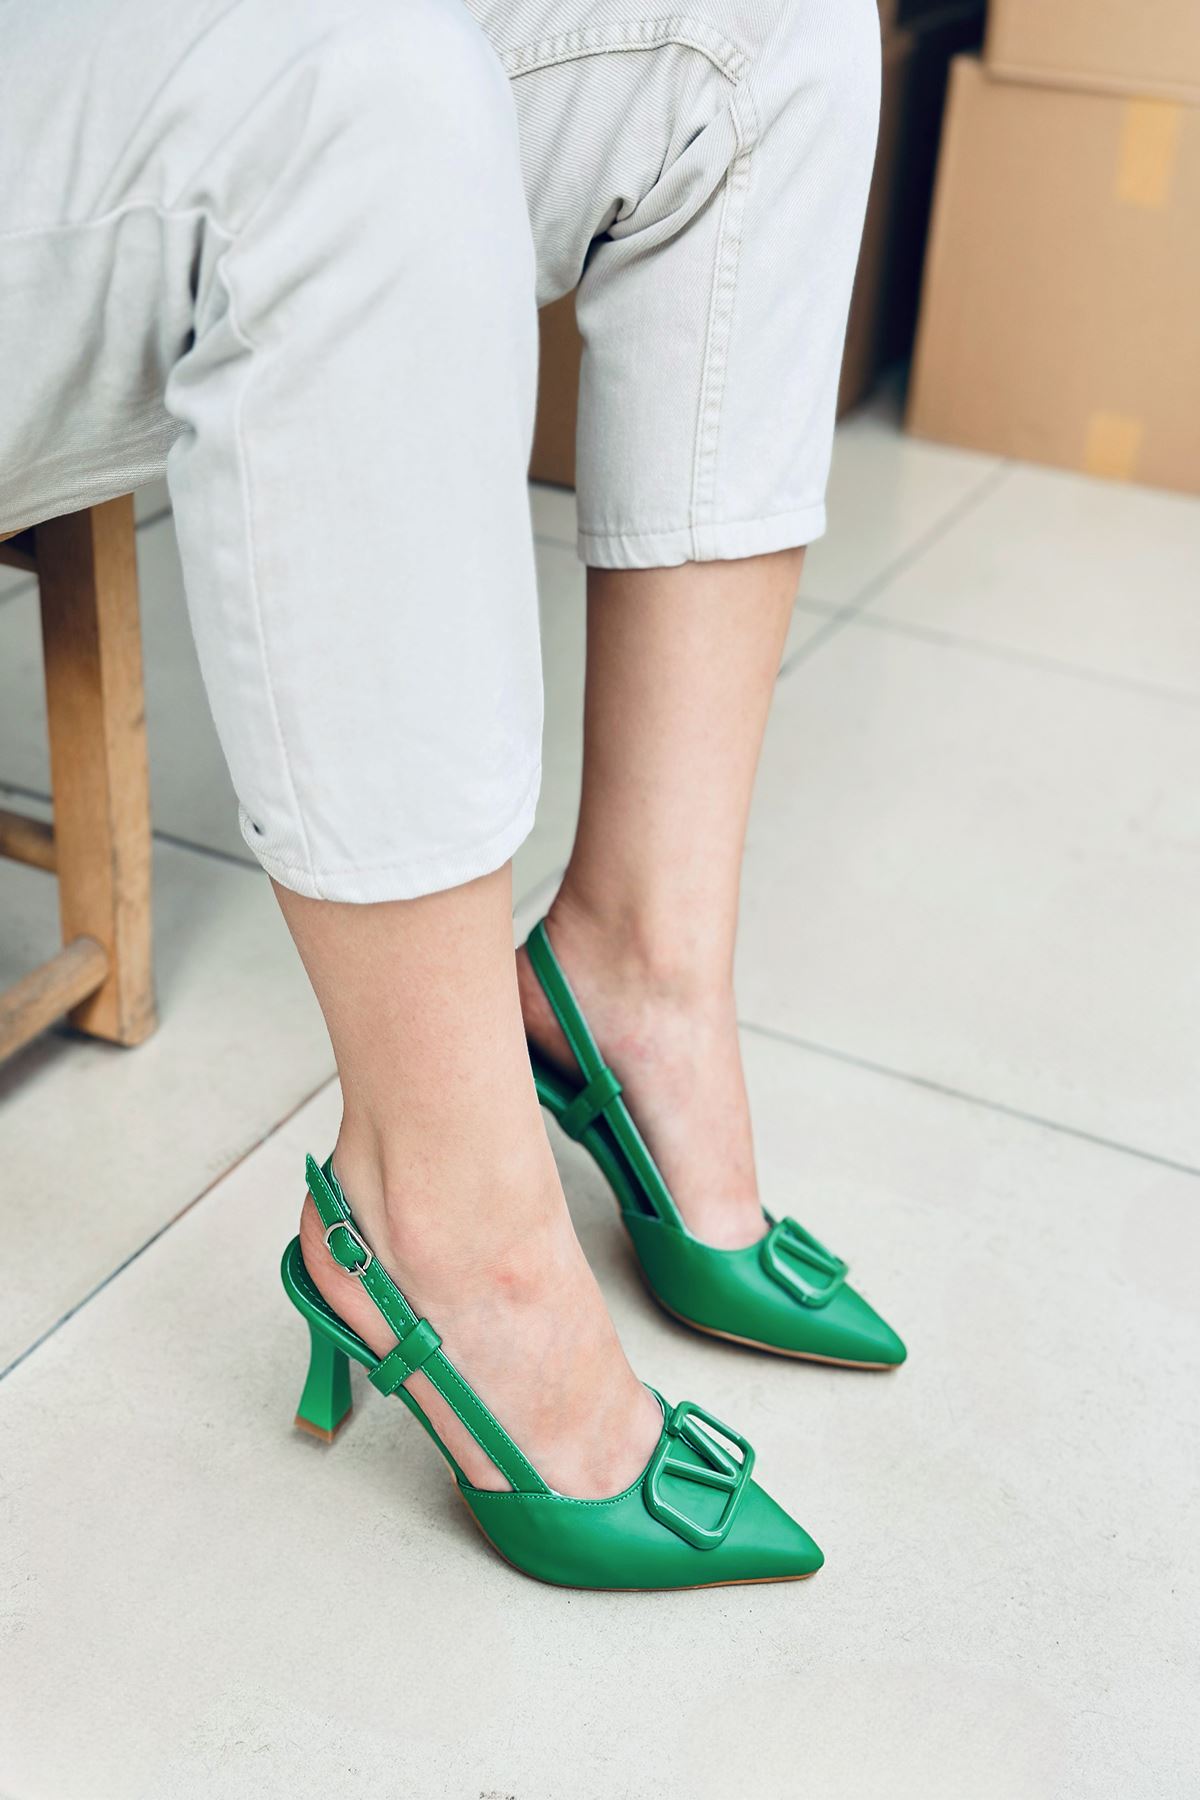 Mida Shoes Y3033 Yeşil Deri Tokalı Kadın Topuklu Ayakkabı